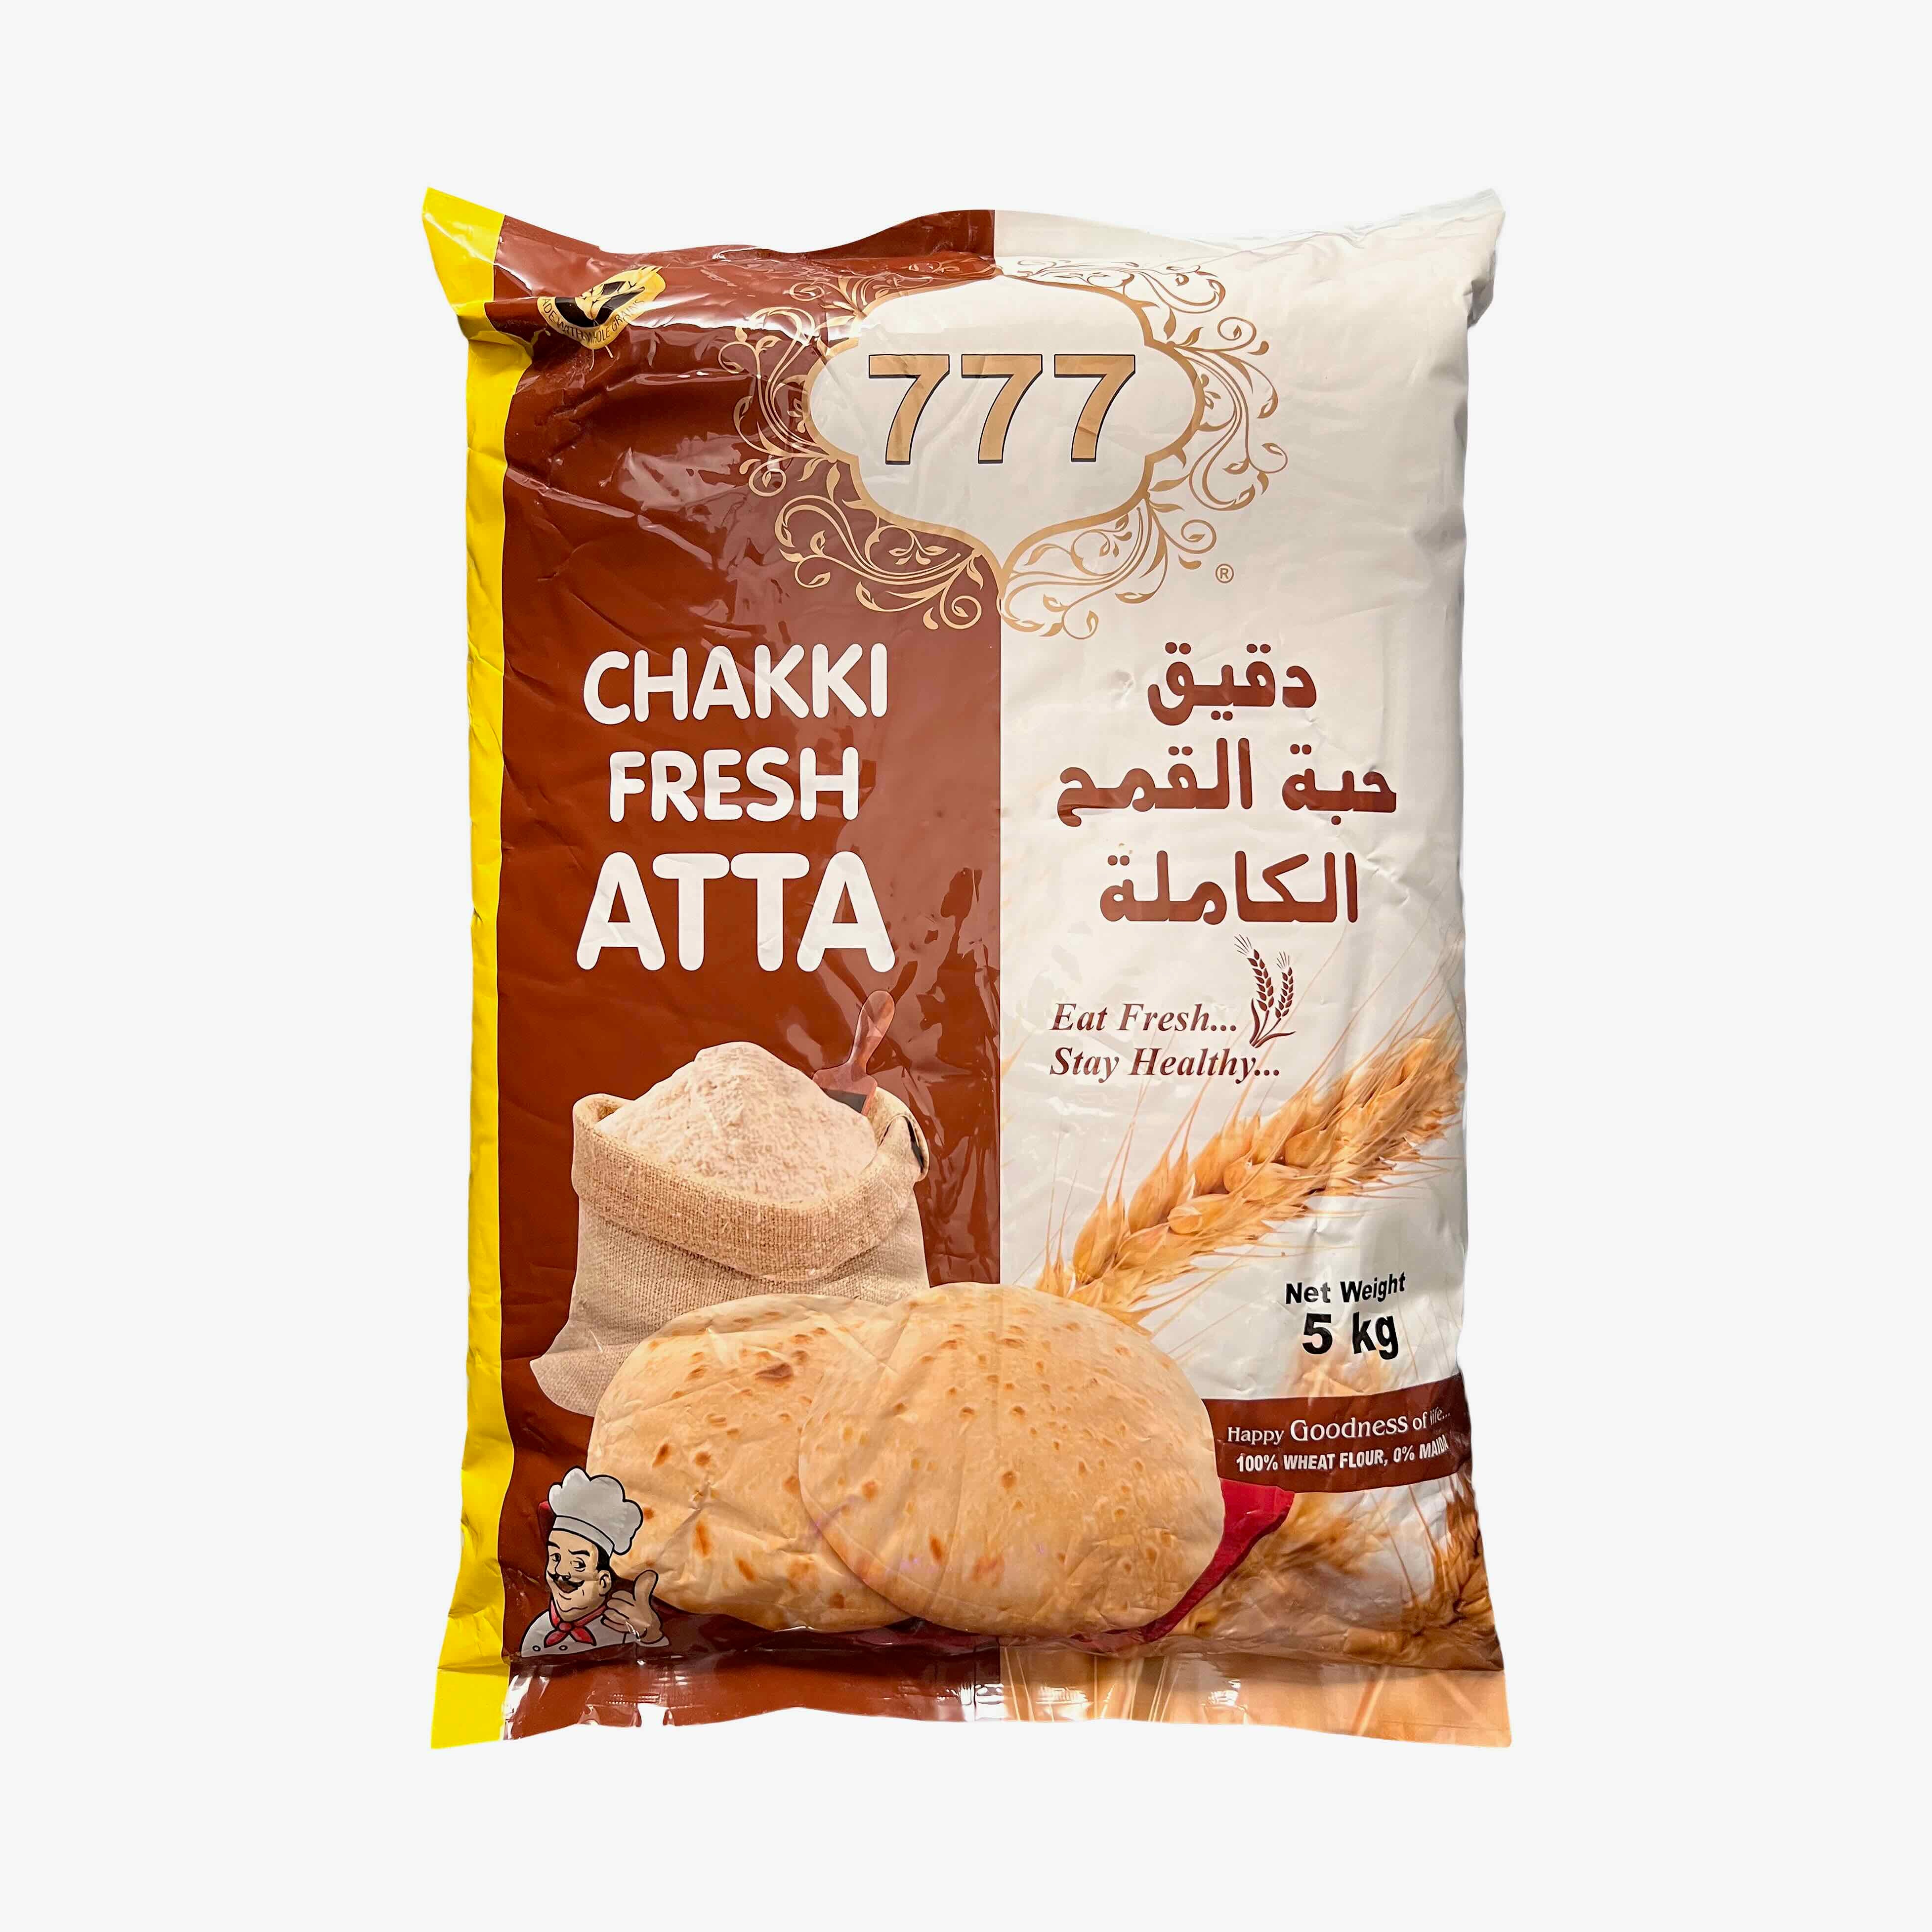 777 Chakki Atta / Whole Wheat Flour 5kg